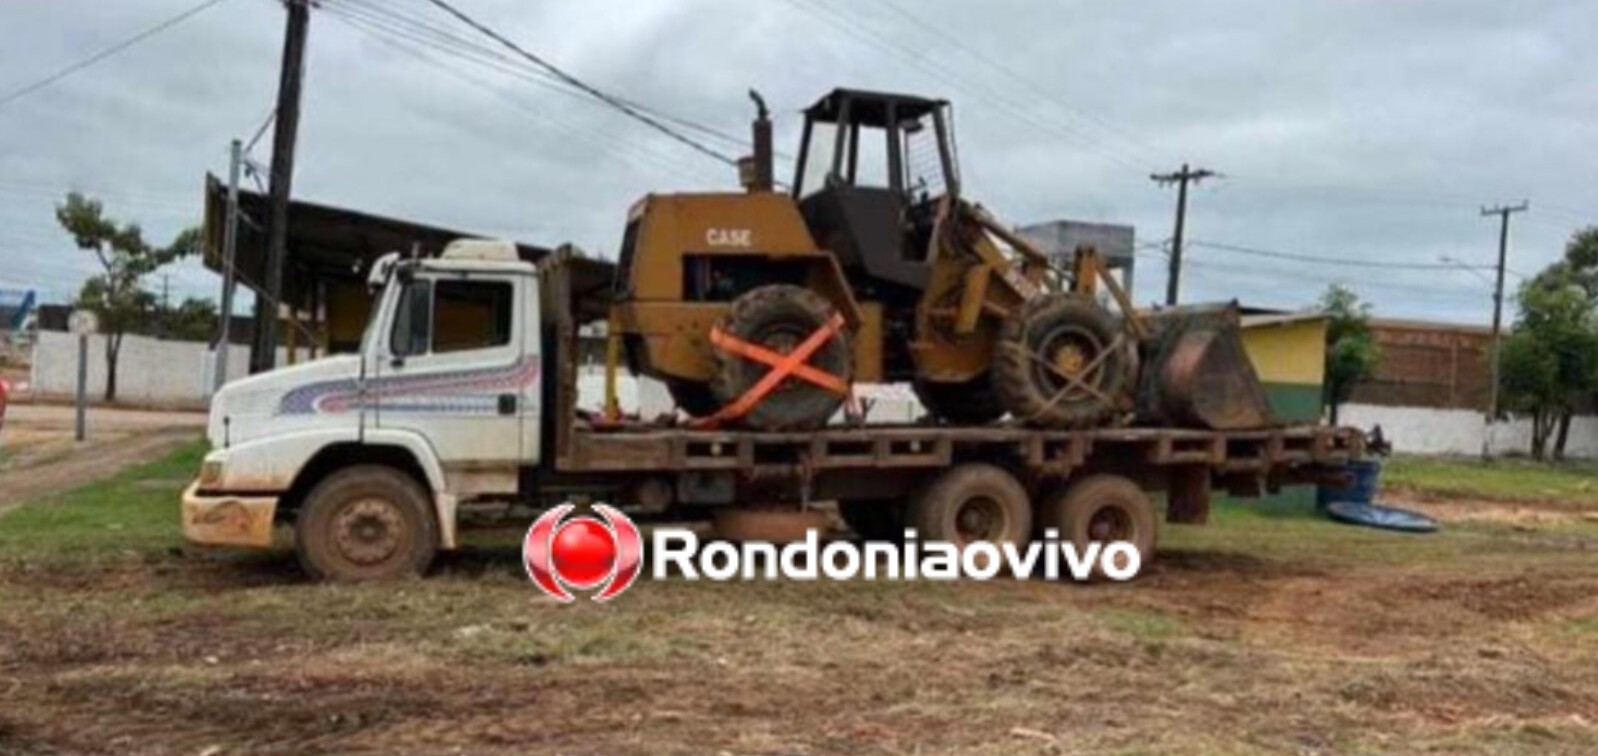 CATIVEIRO: Bandidos sequestram empresário para roubar caminhão e pá carregadeira 